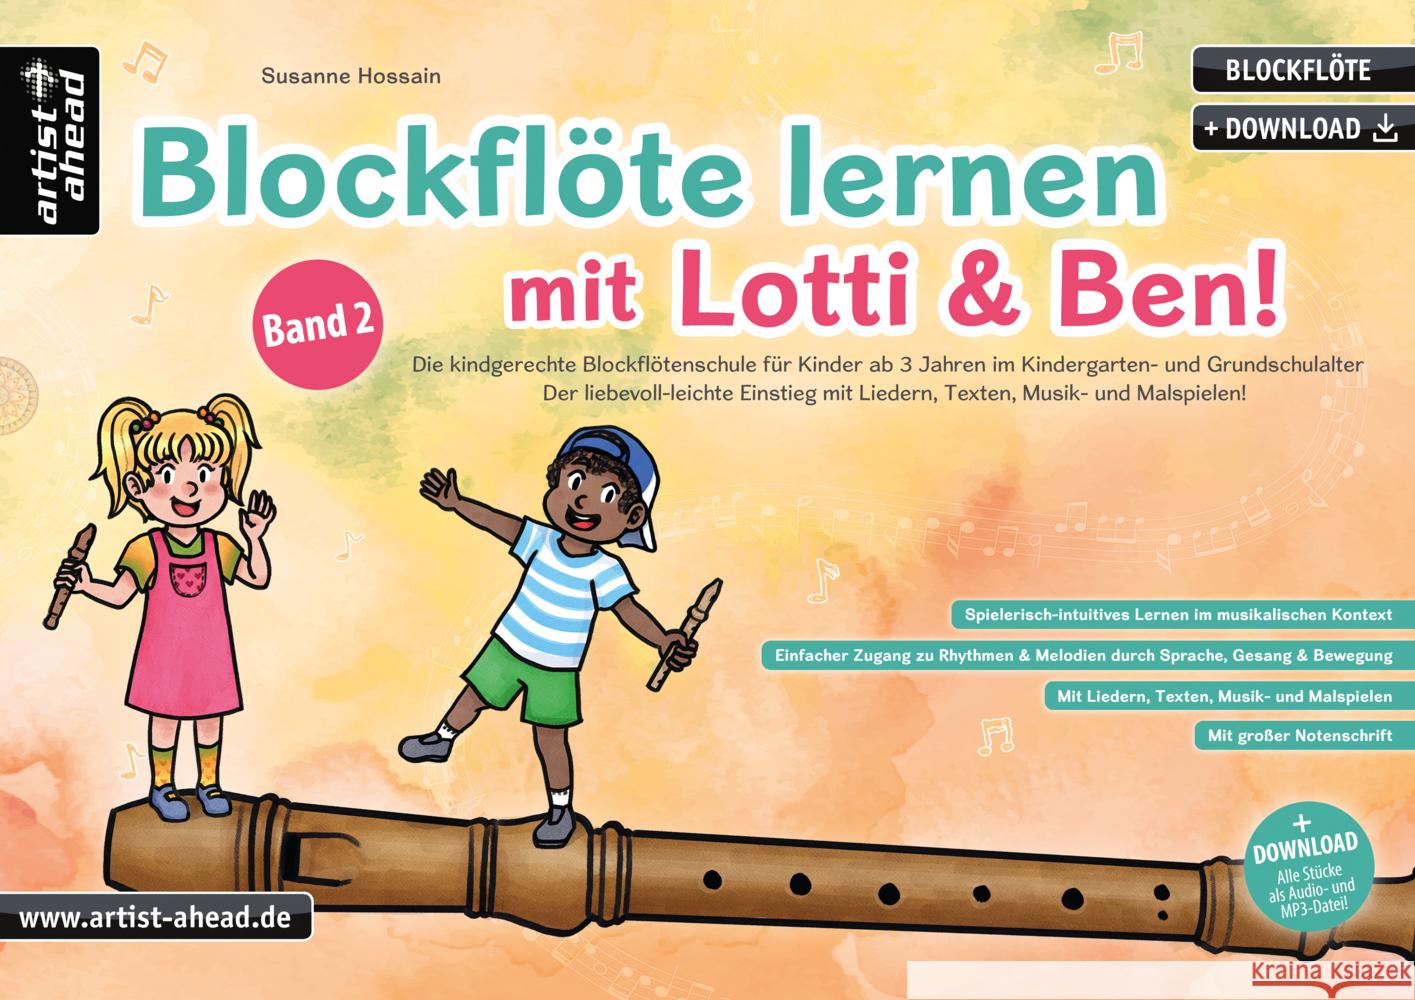 Blockflöte lernen mit Lotti & Ben - Band 2! Hossain, Susanne 9783866421837